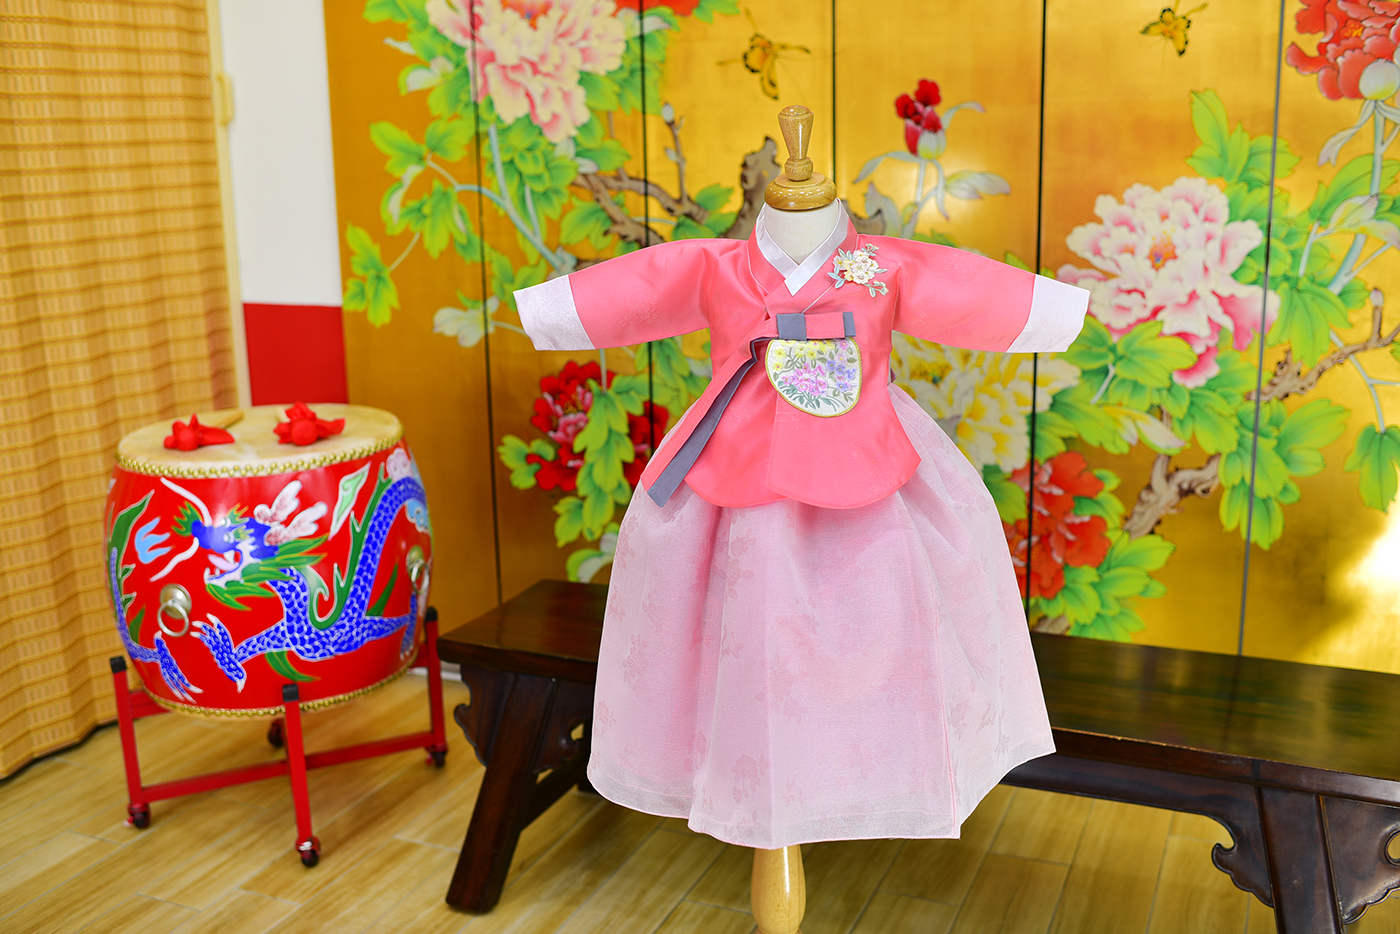 2023-11-09小孩宮廷韓服禮服照。甜美款式  珊瑚粉系的新式韓服配色照片集